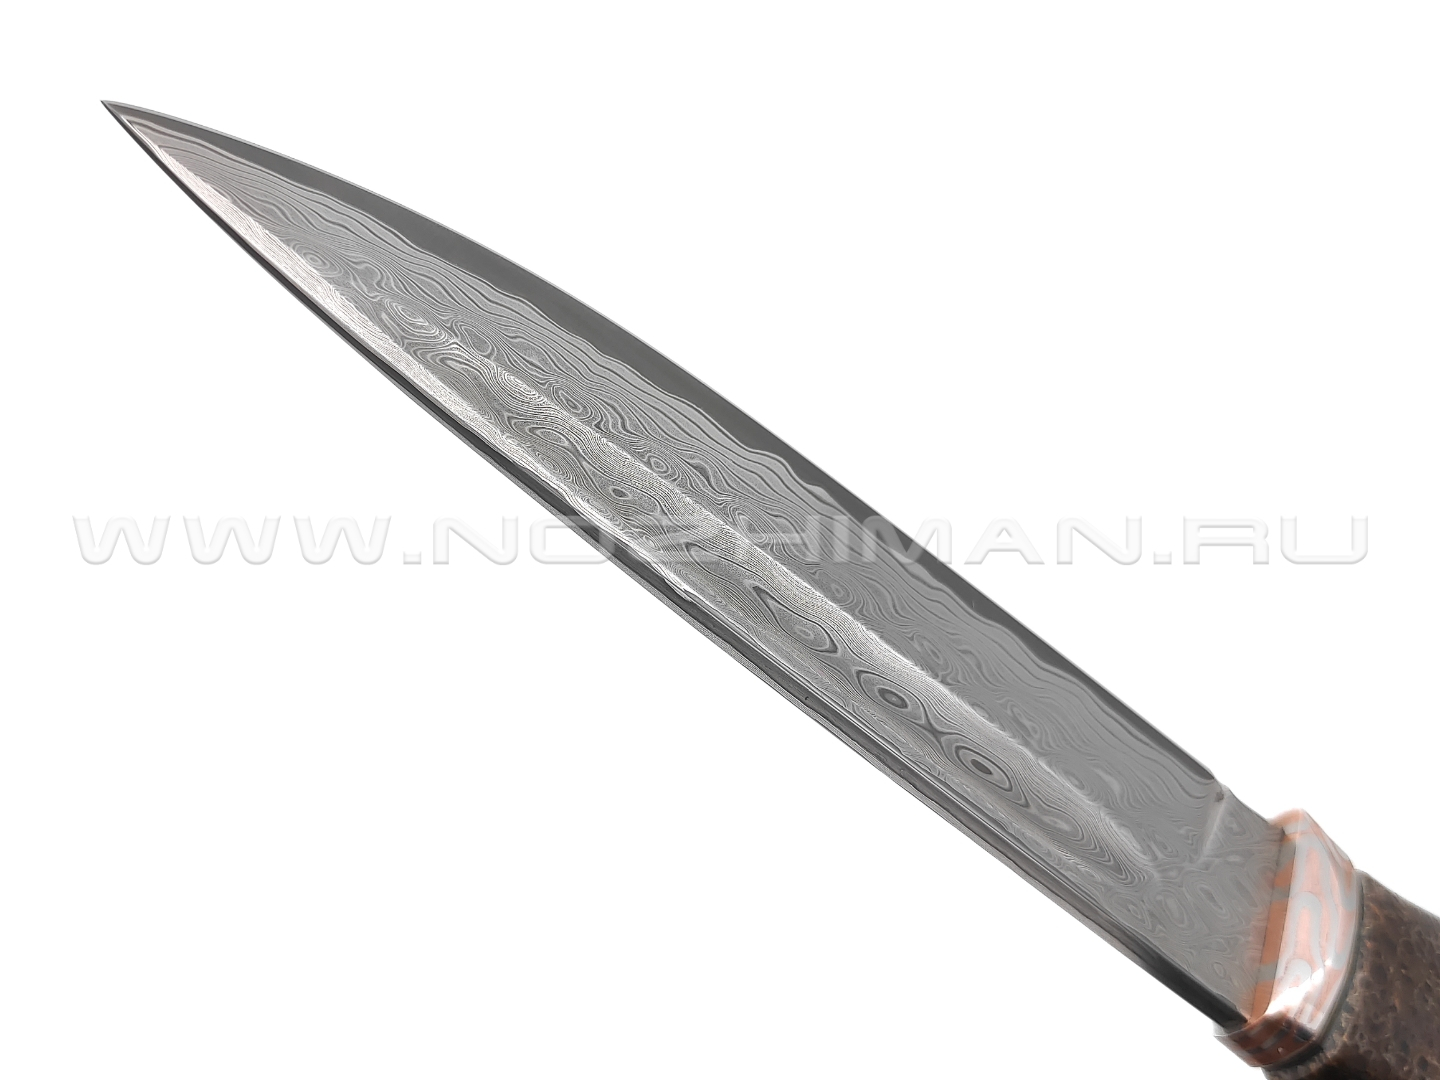 Кузница Васильева нож "НЛВ107" ламинат S390, рукоять карельская береза, позвонок кита, мокумэ-ганэ